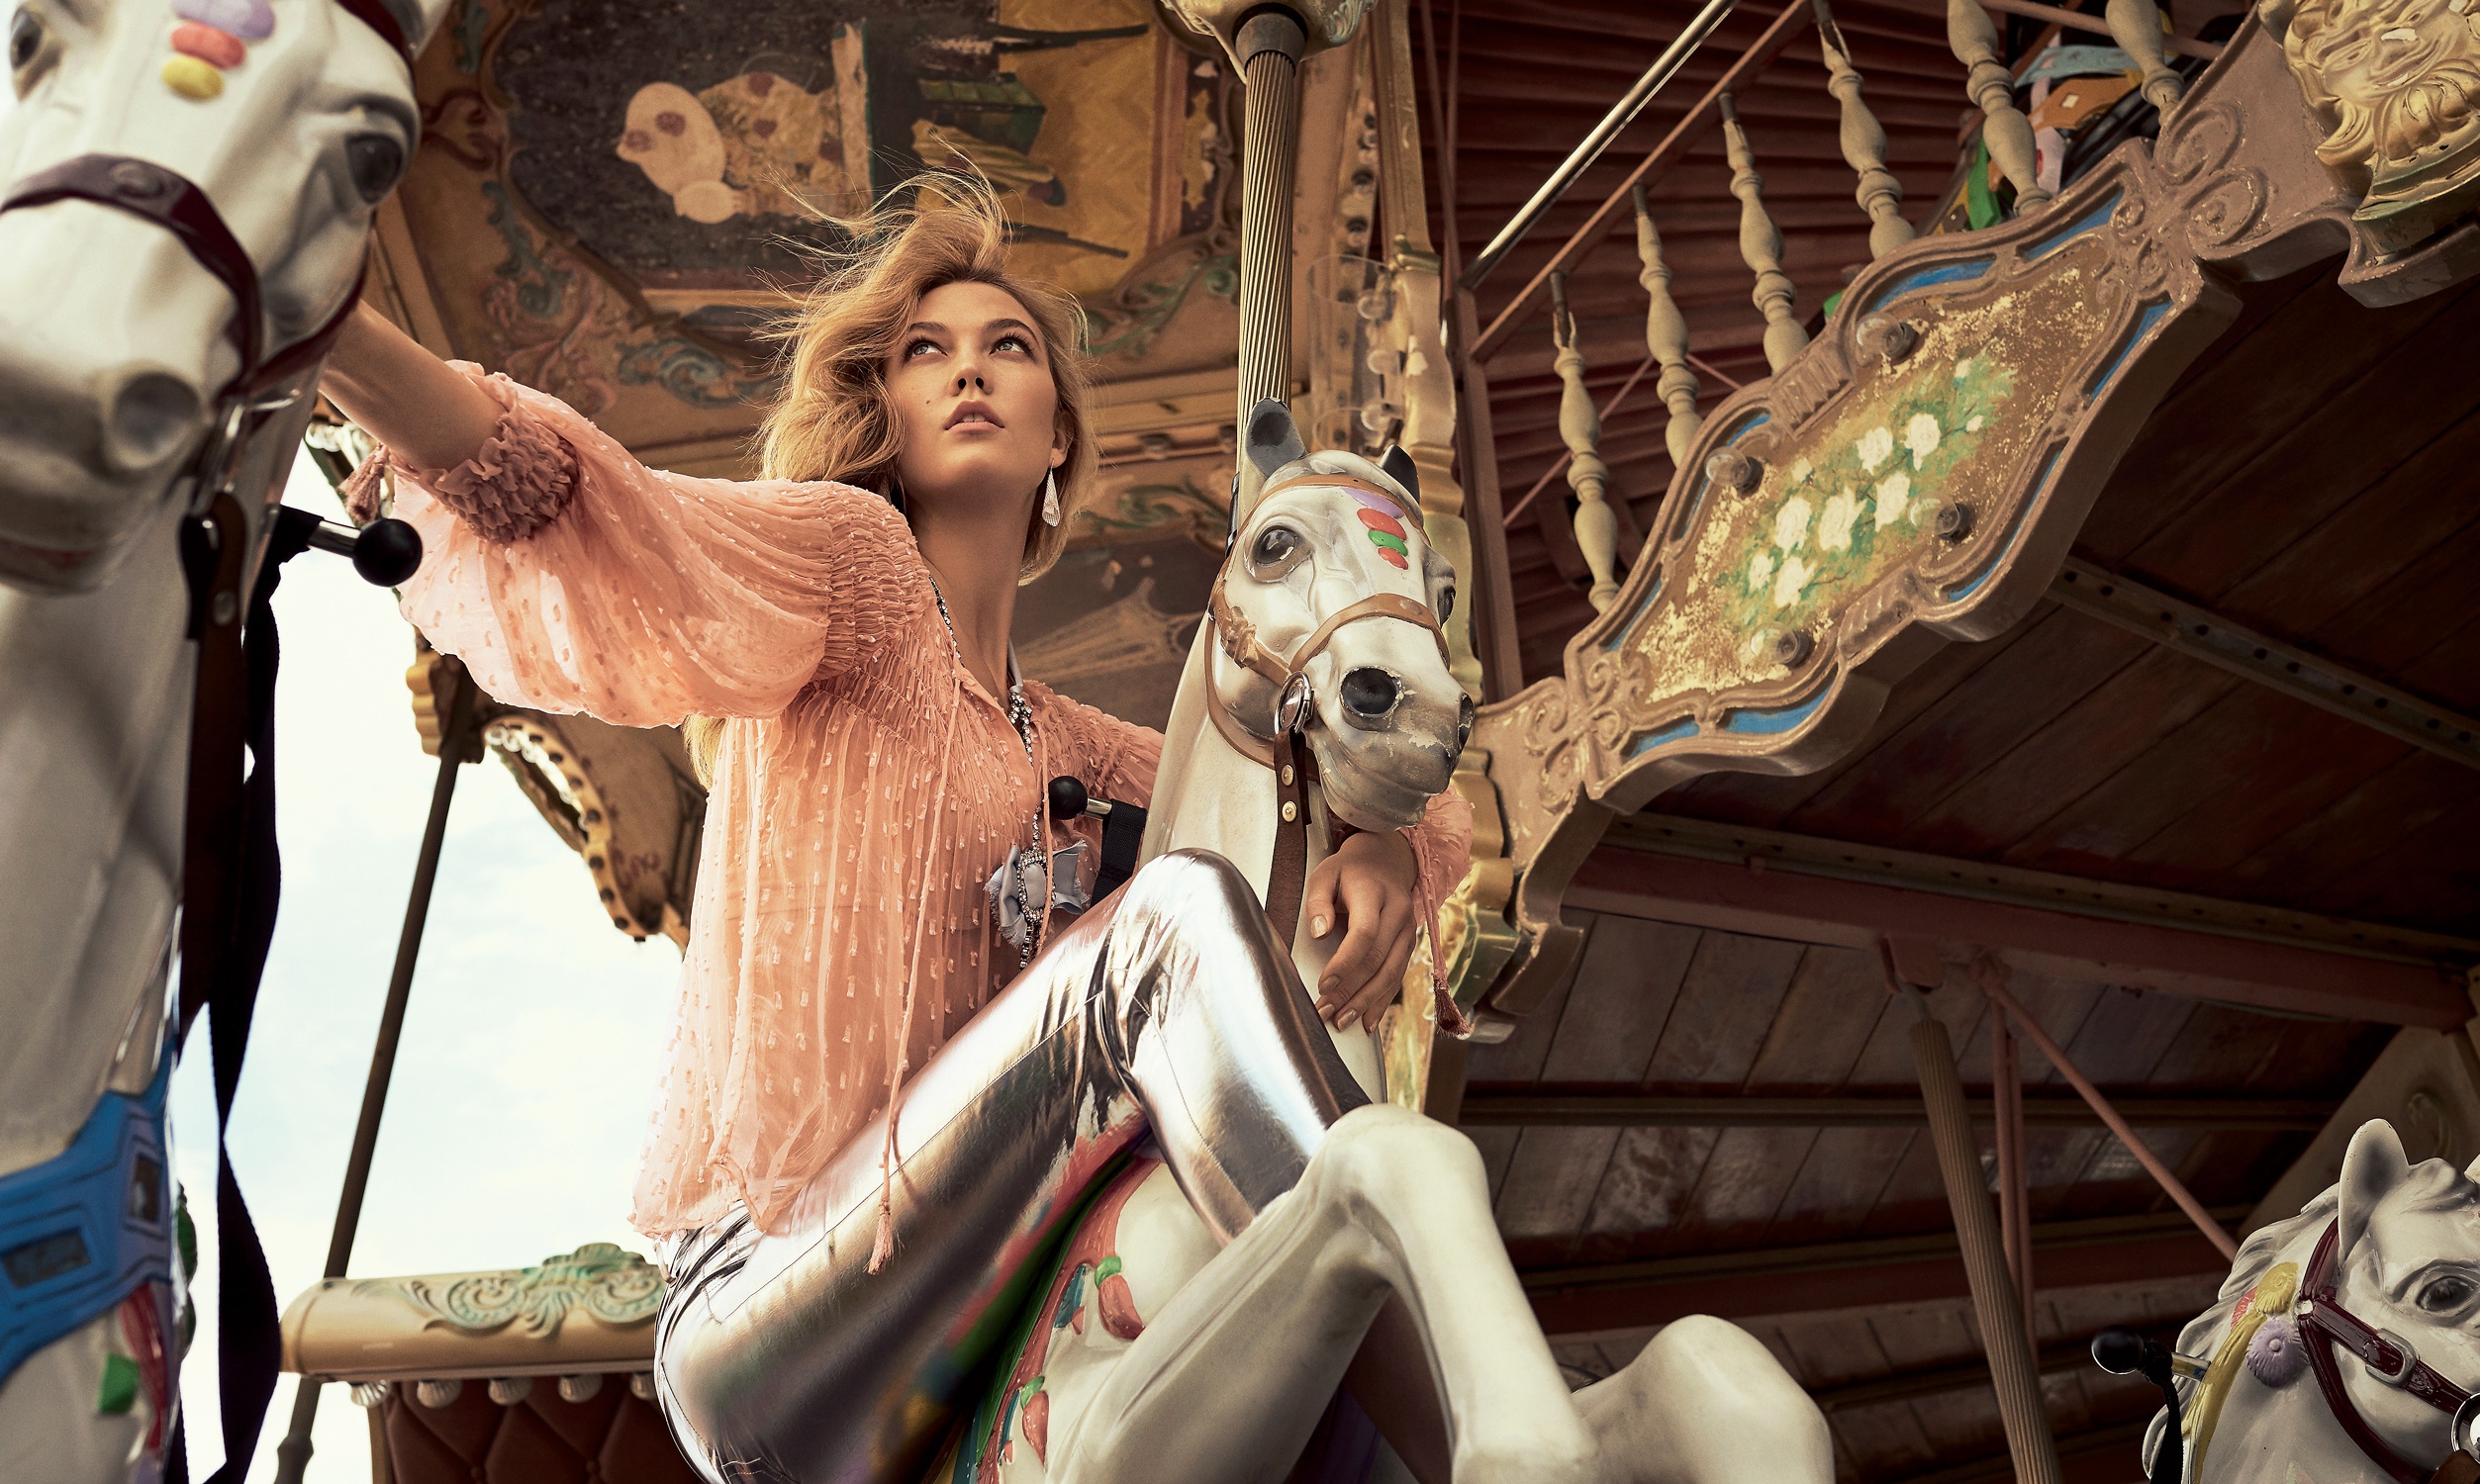 American Blonde Carrousel Karlie Kloss Model 2506x1500